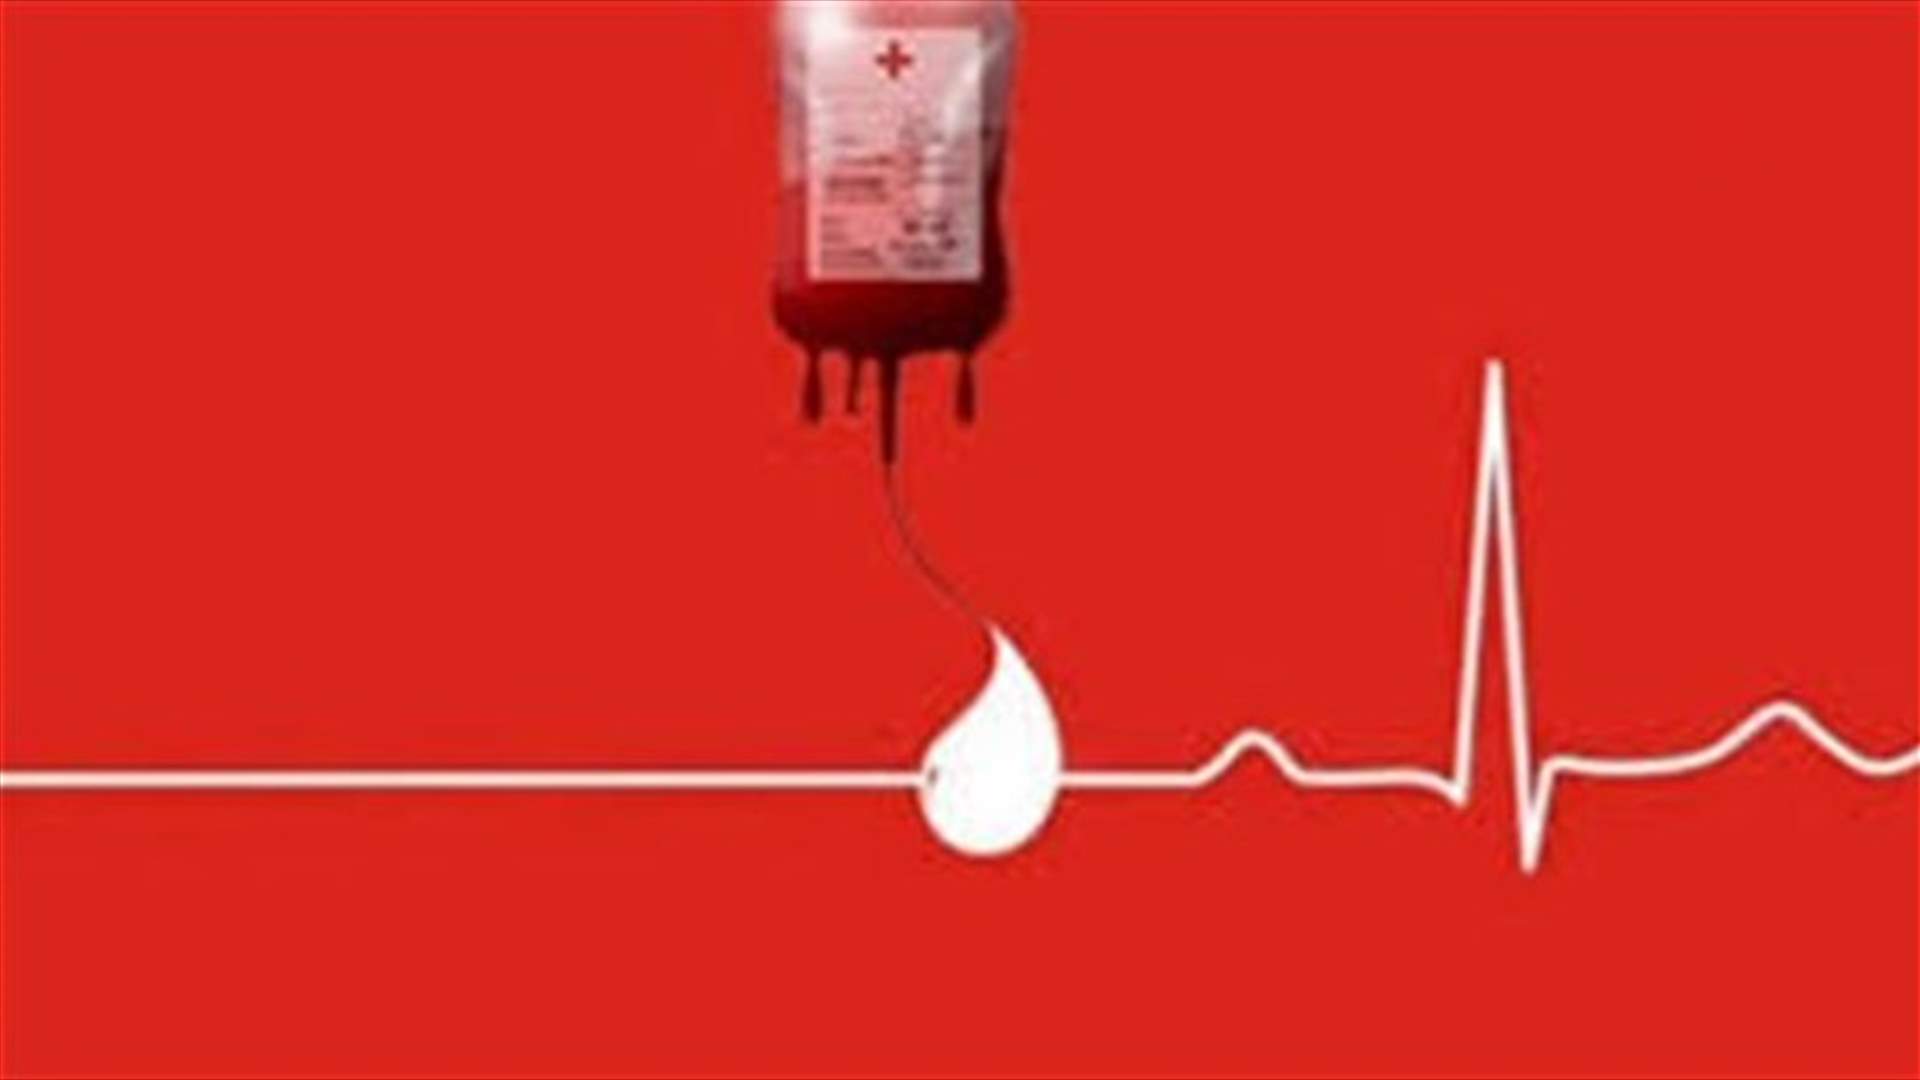 مريض في مستشفى جبل لبنان بحاجة ماسة لوحدتي دم من فئة A+... للتبرع الاتصال على الرقم:81023451